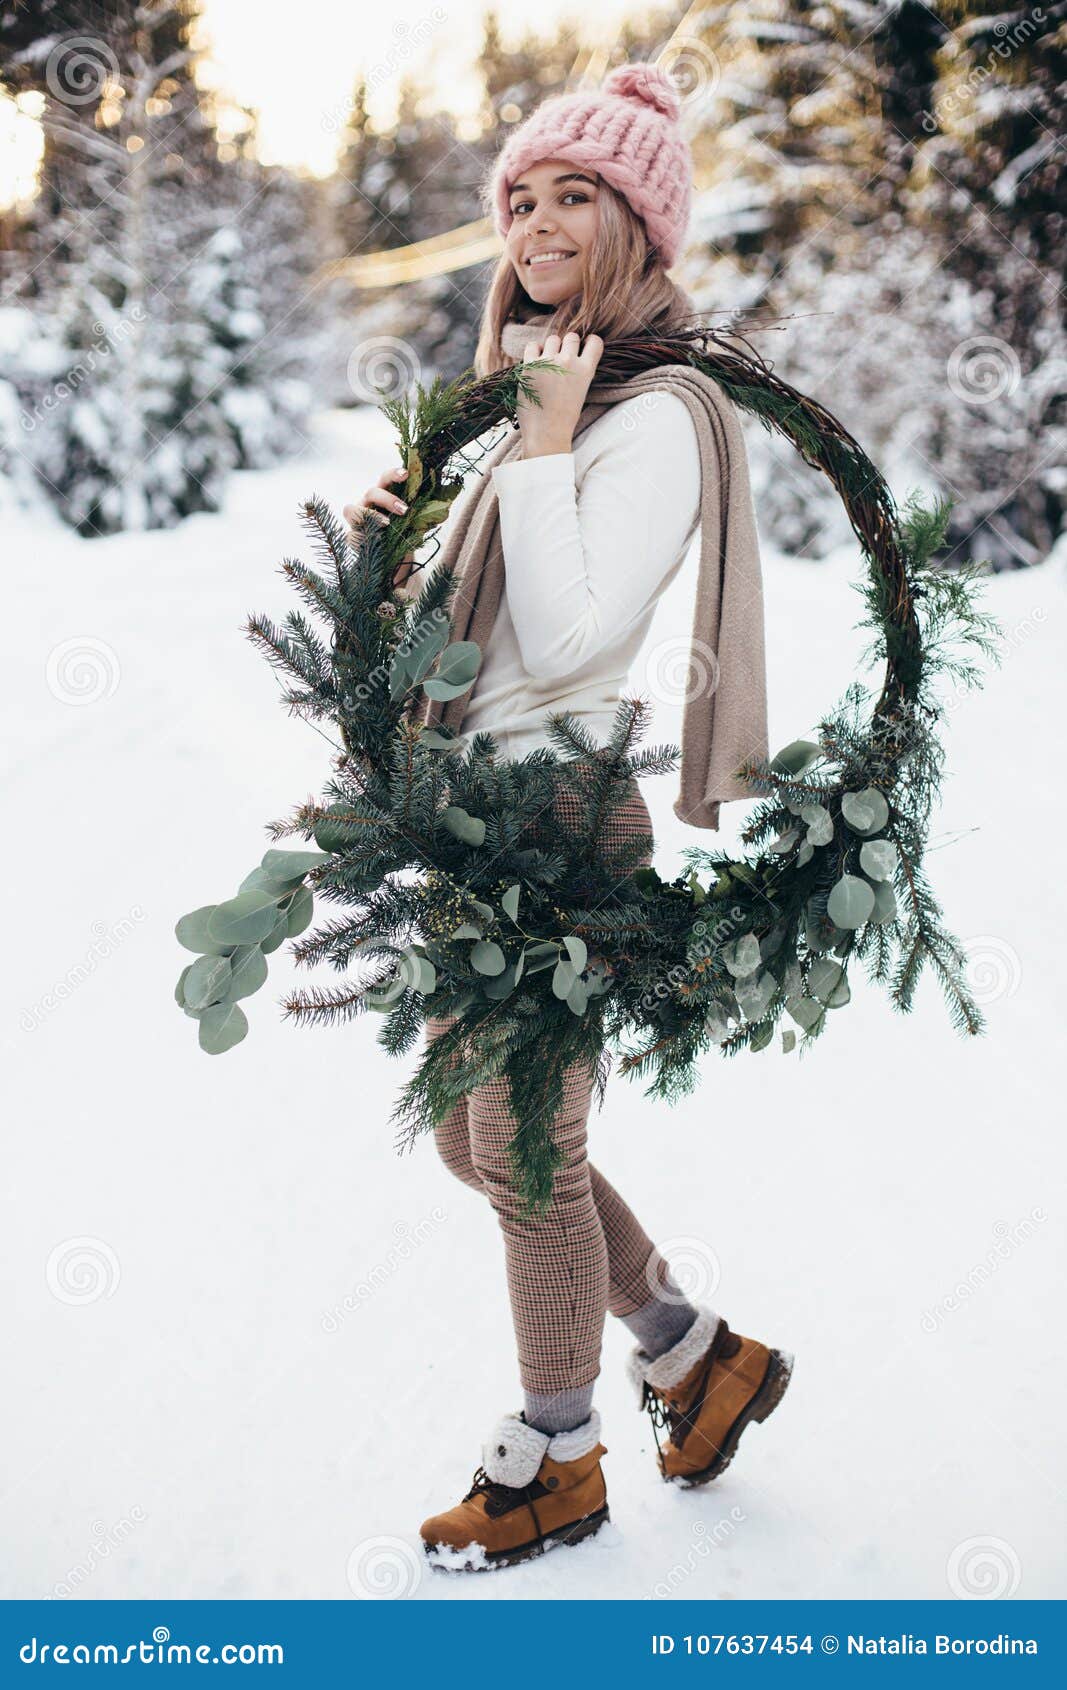 Winter Forest Wreath